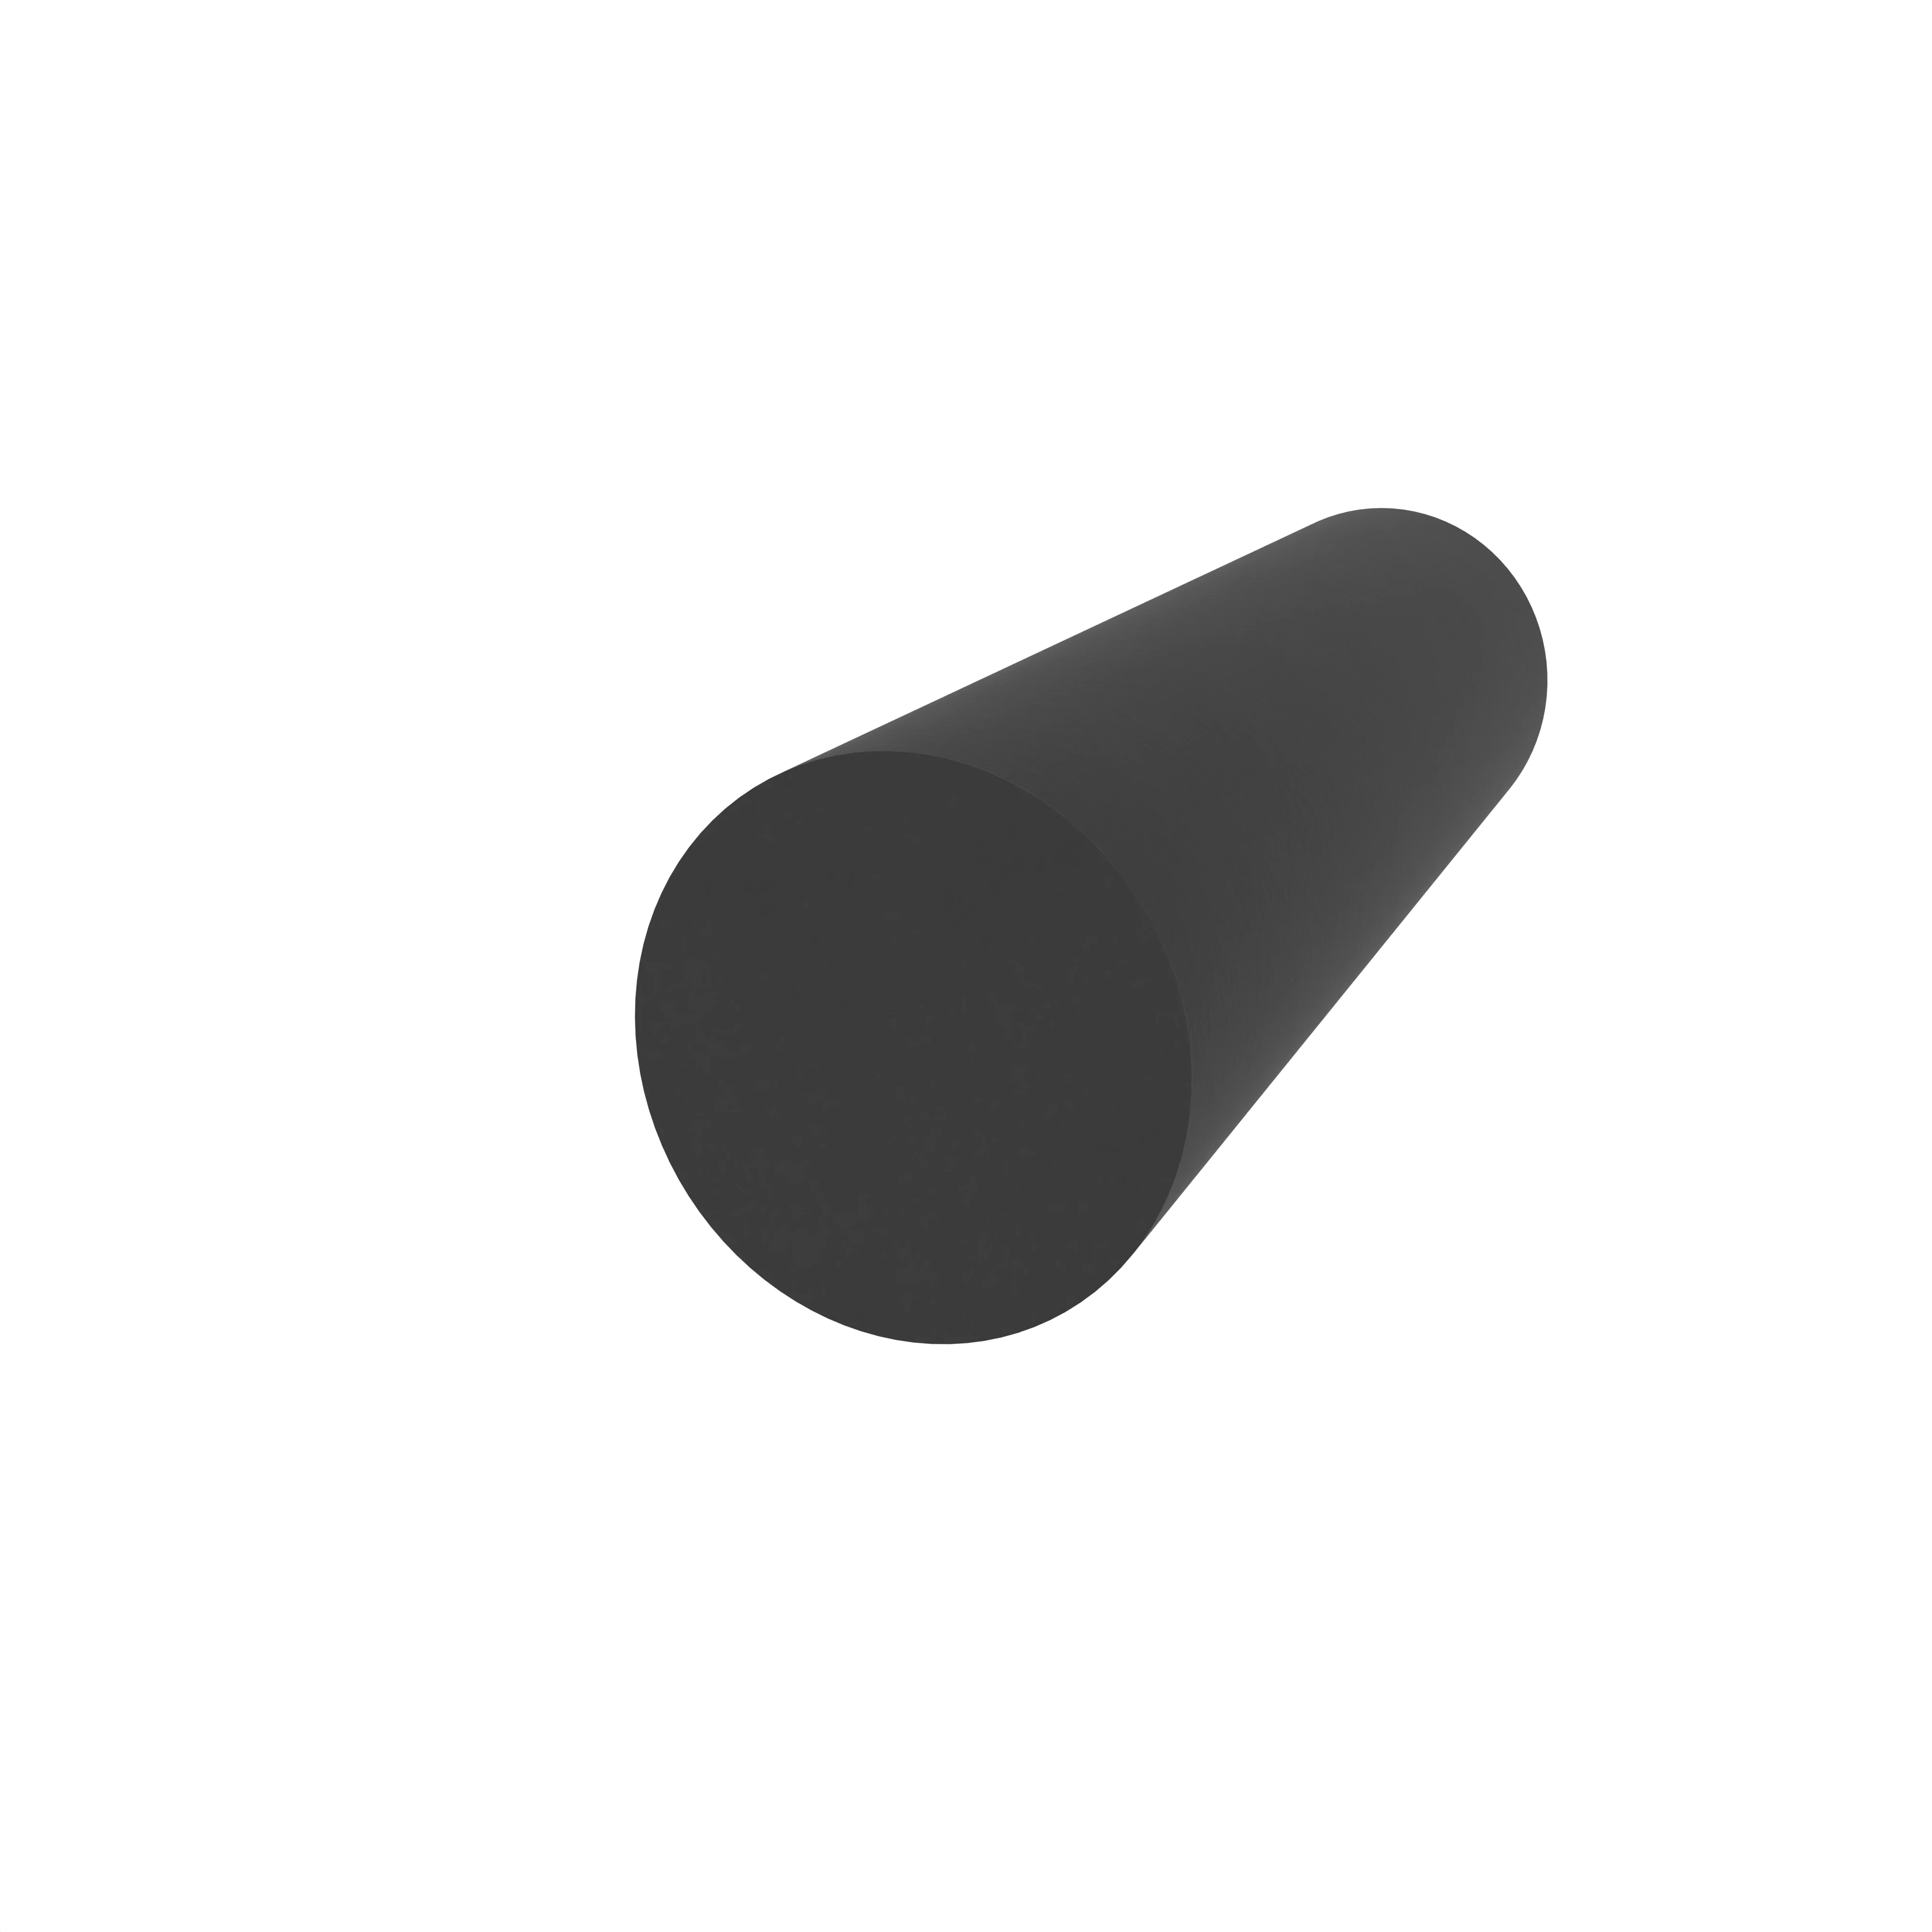 Moosgummidichtung rund | 5 mm Durchmesser | Farbe: schwarz